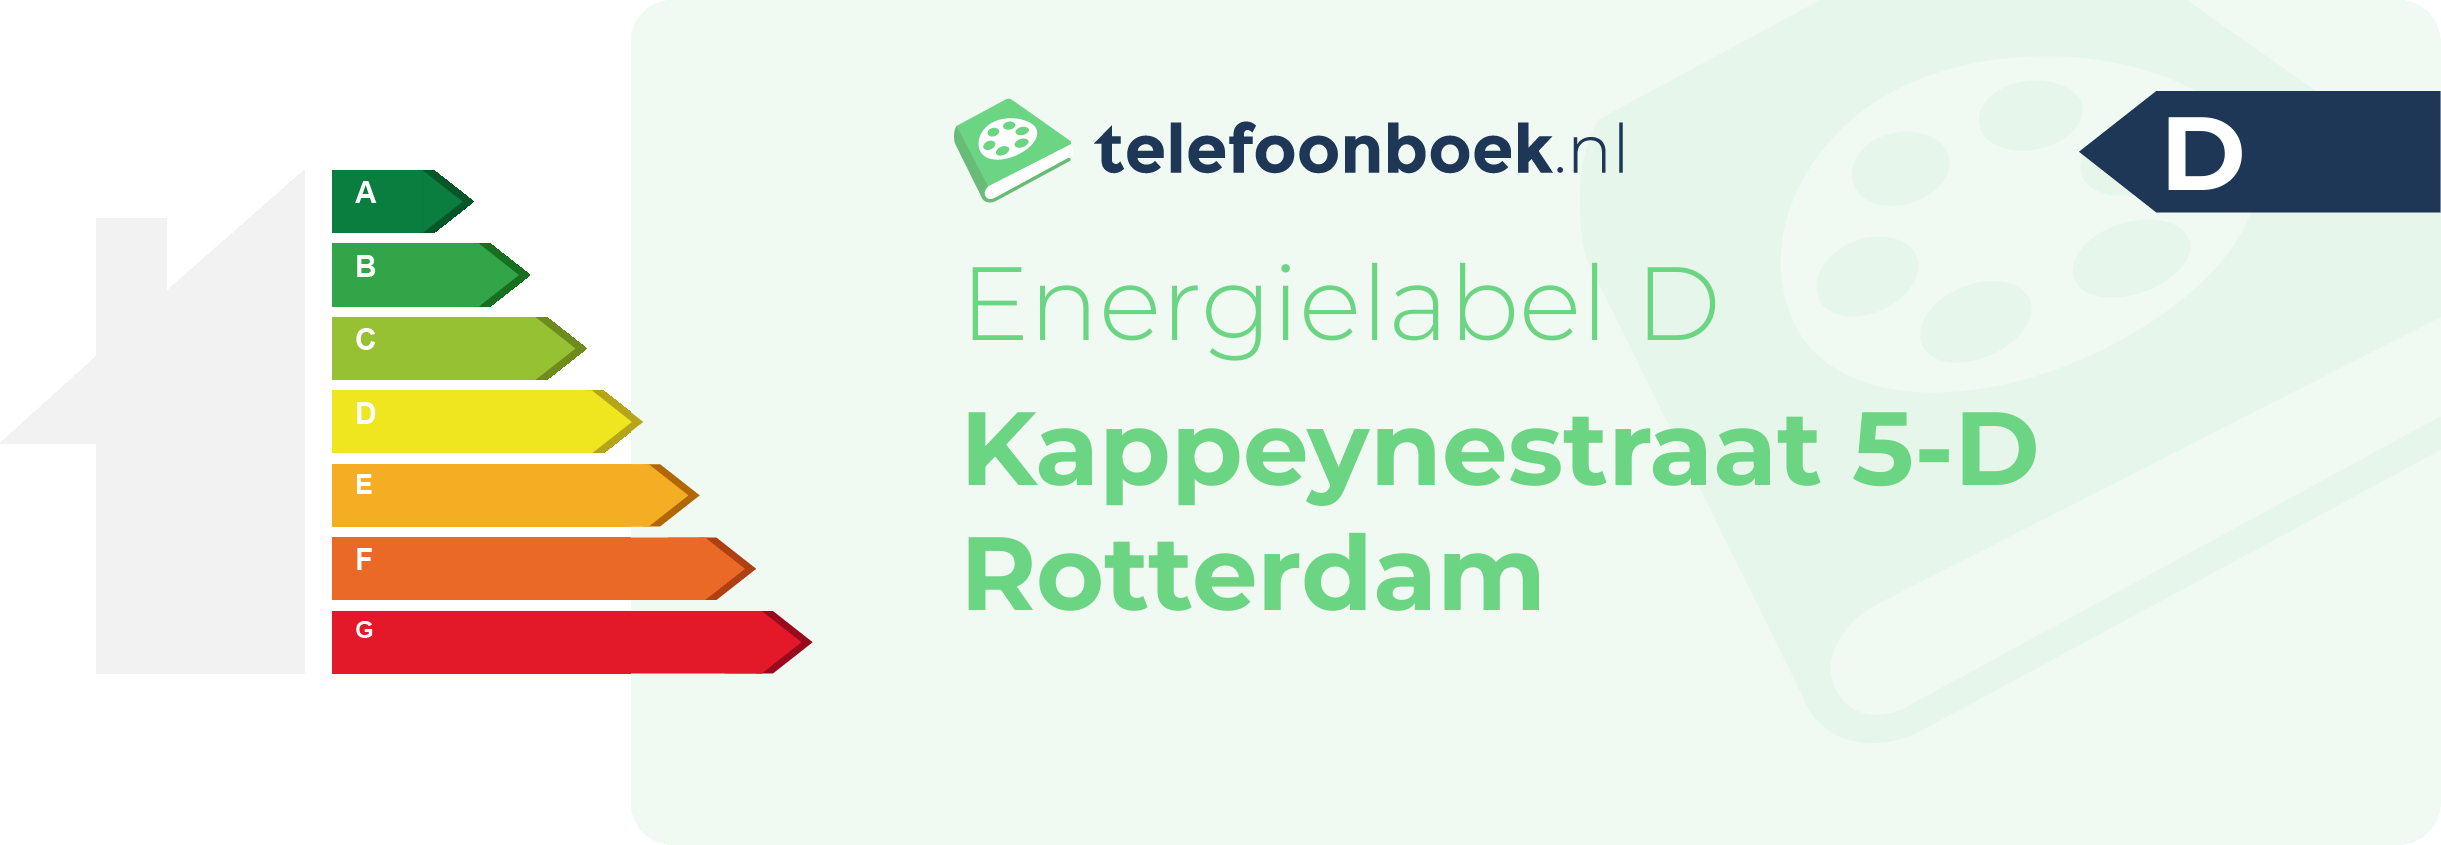 Energielabel Kappeynestraat 5-D Rotterdam